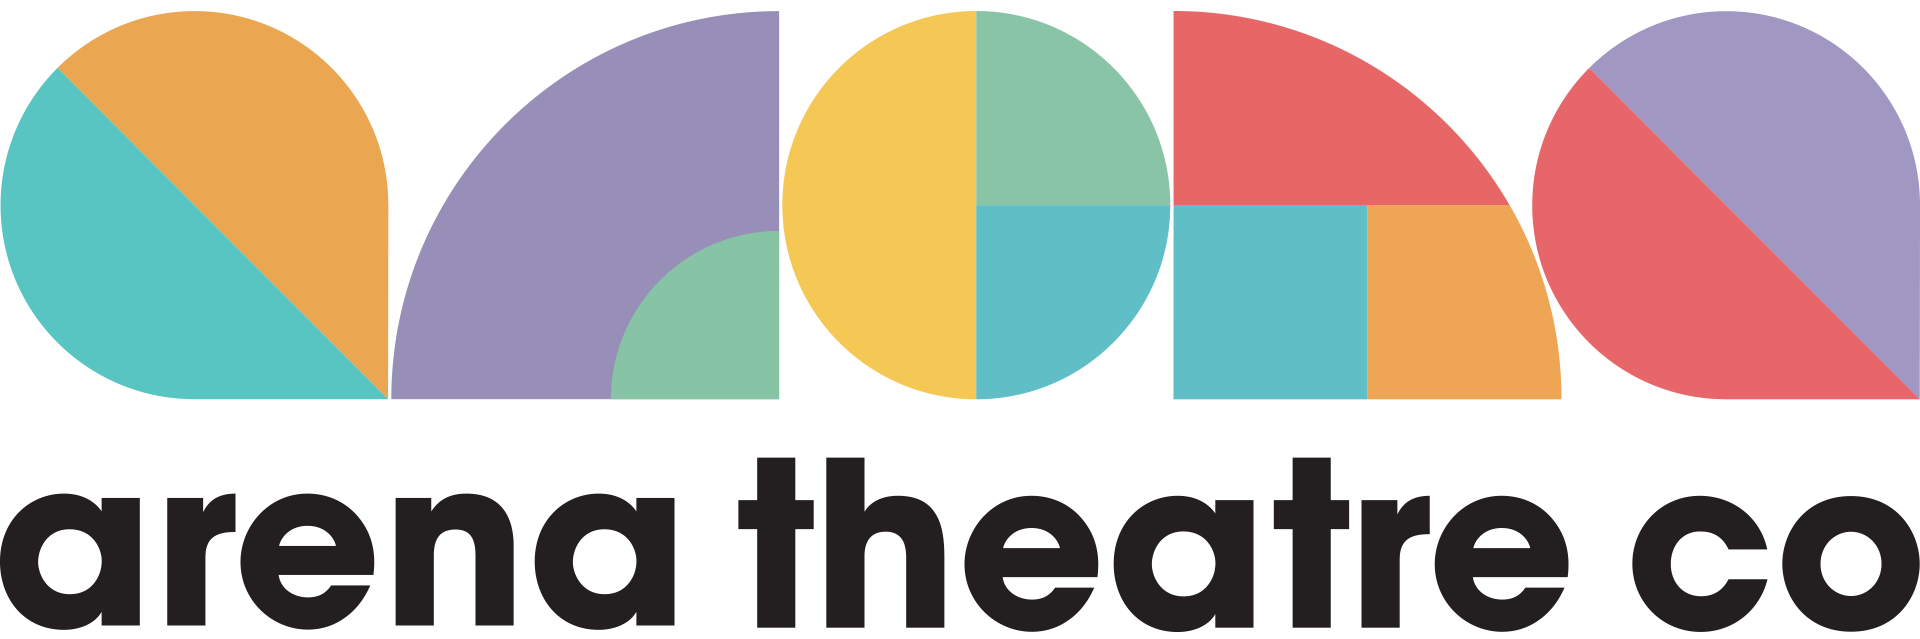 Arena Theatre Company logo